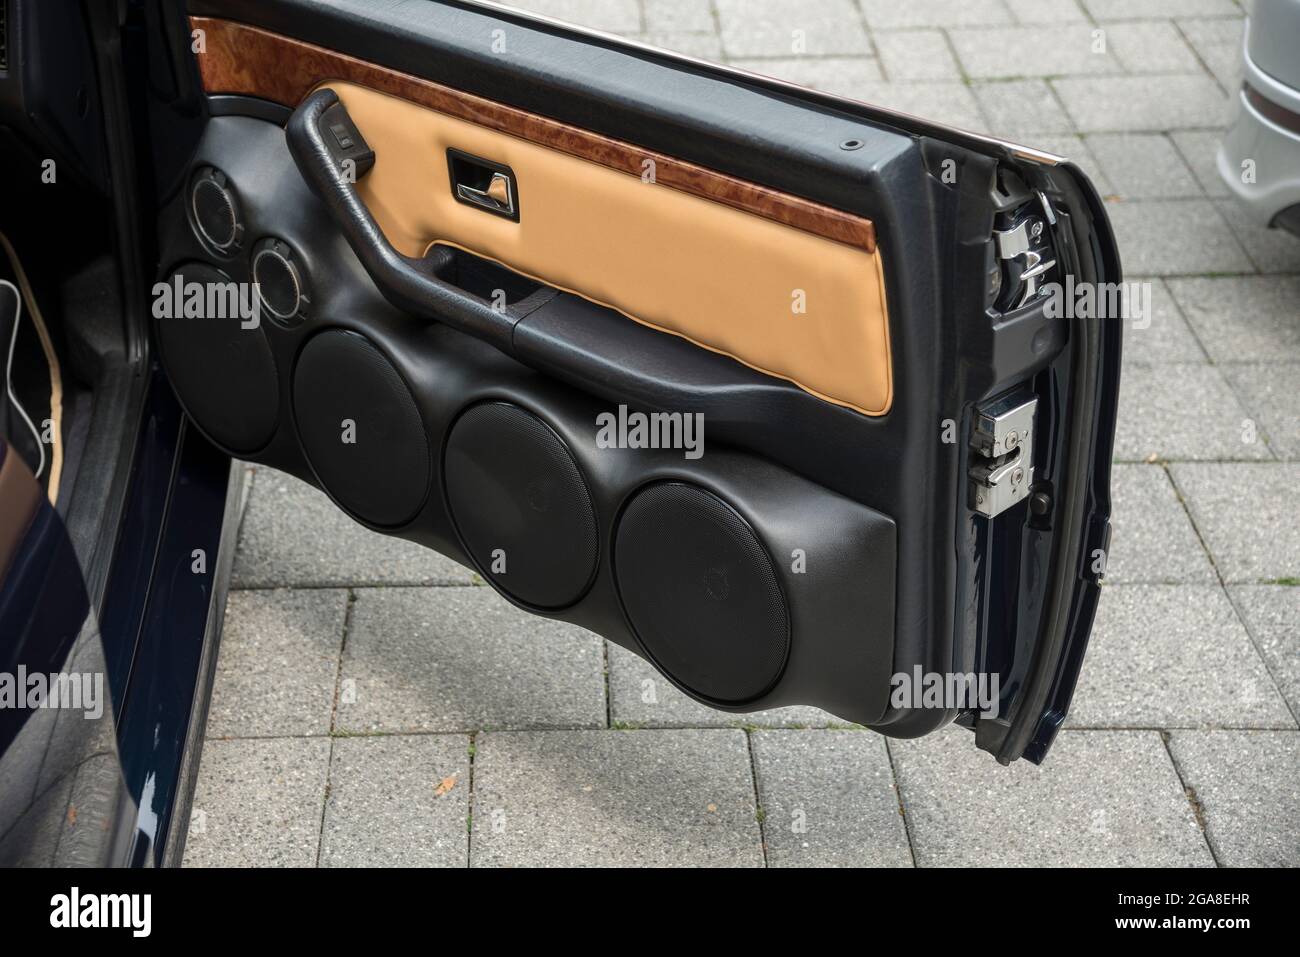 Integrierte Lautsprecher in einer Autotür Stockfotografie - Alamy